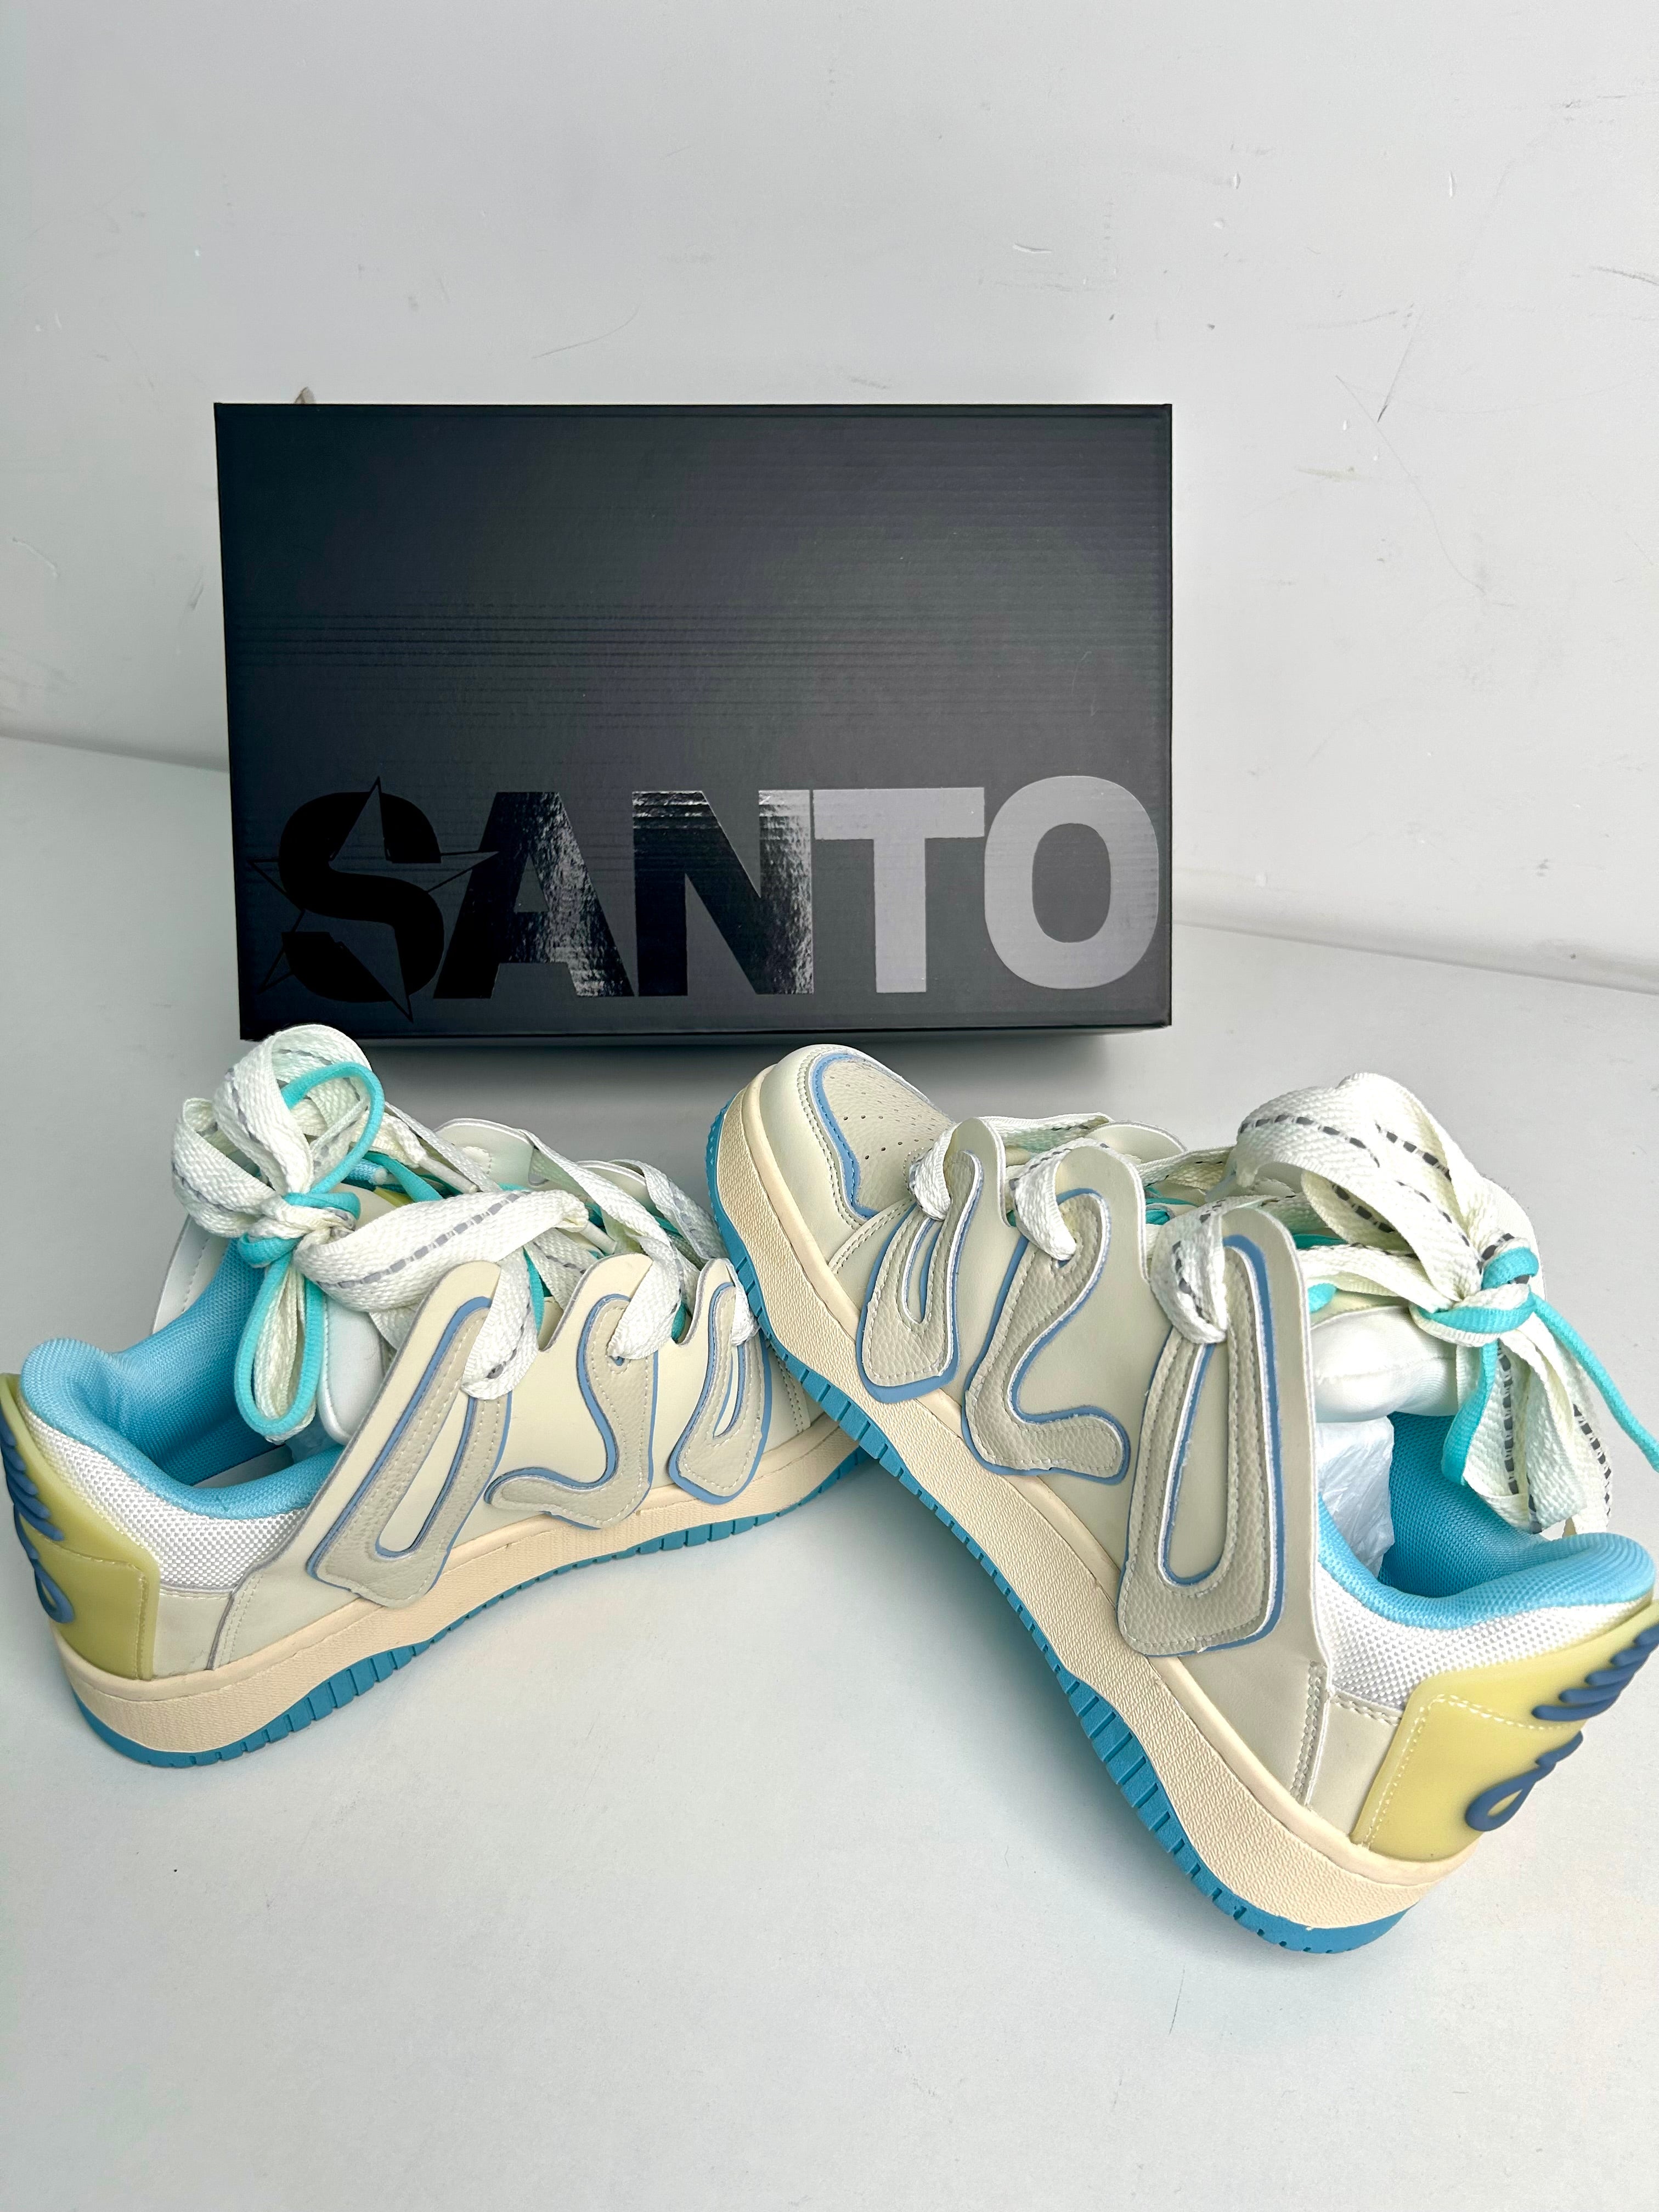 'Waved' Shoes - Santo 